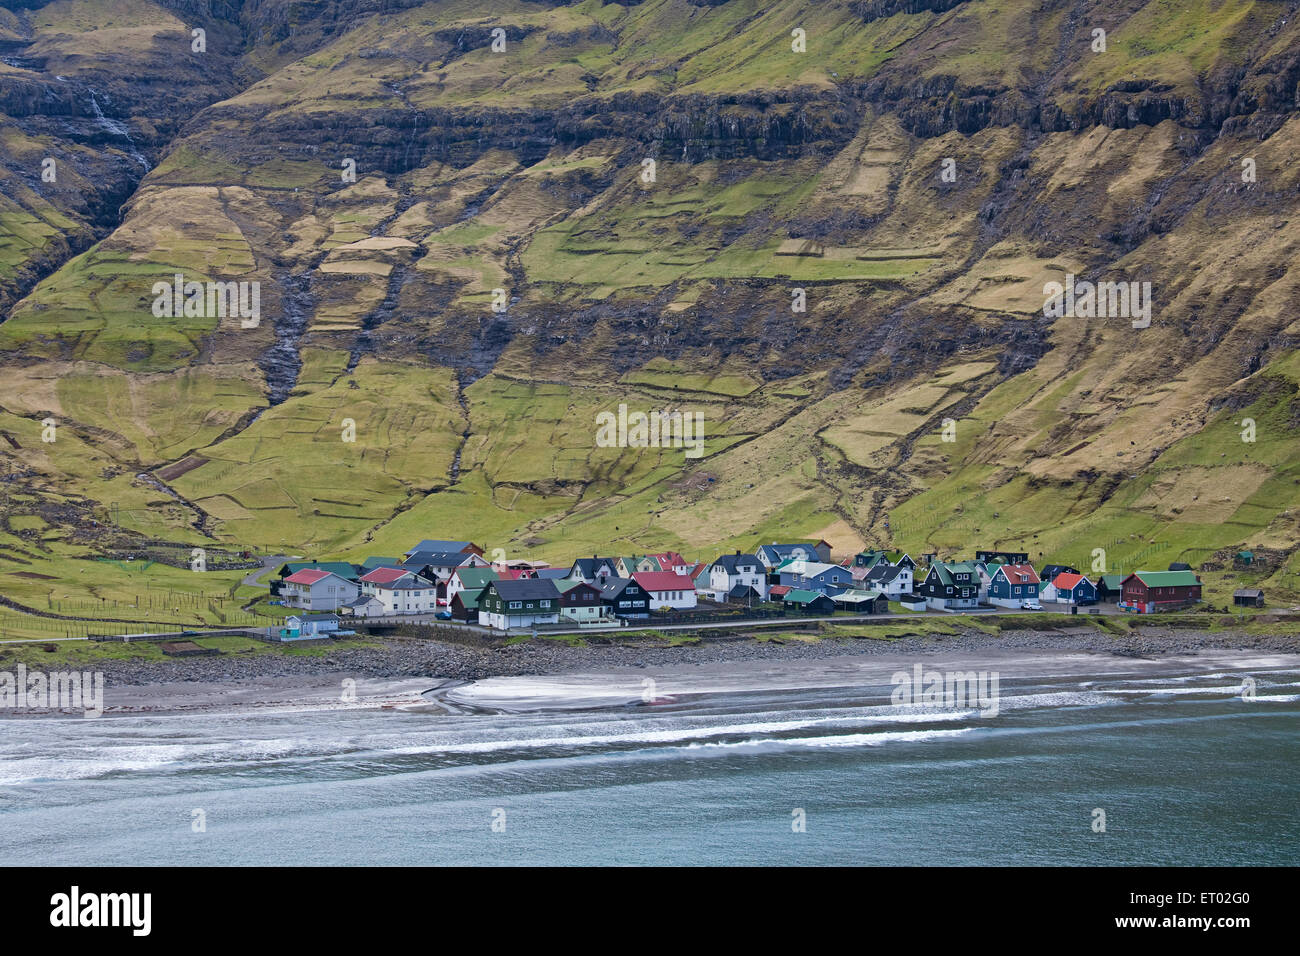 Coastal village below green cliffs, Tjornuvik, Faroe Islands Stock Photo